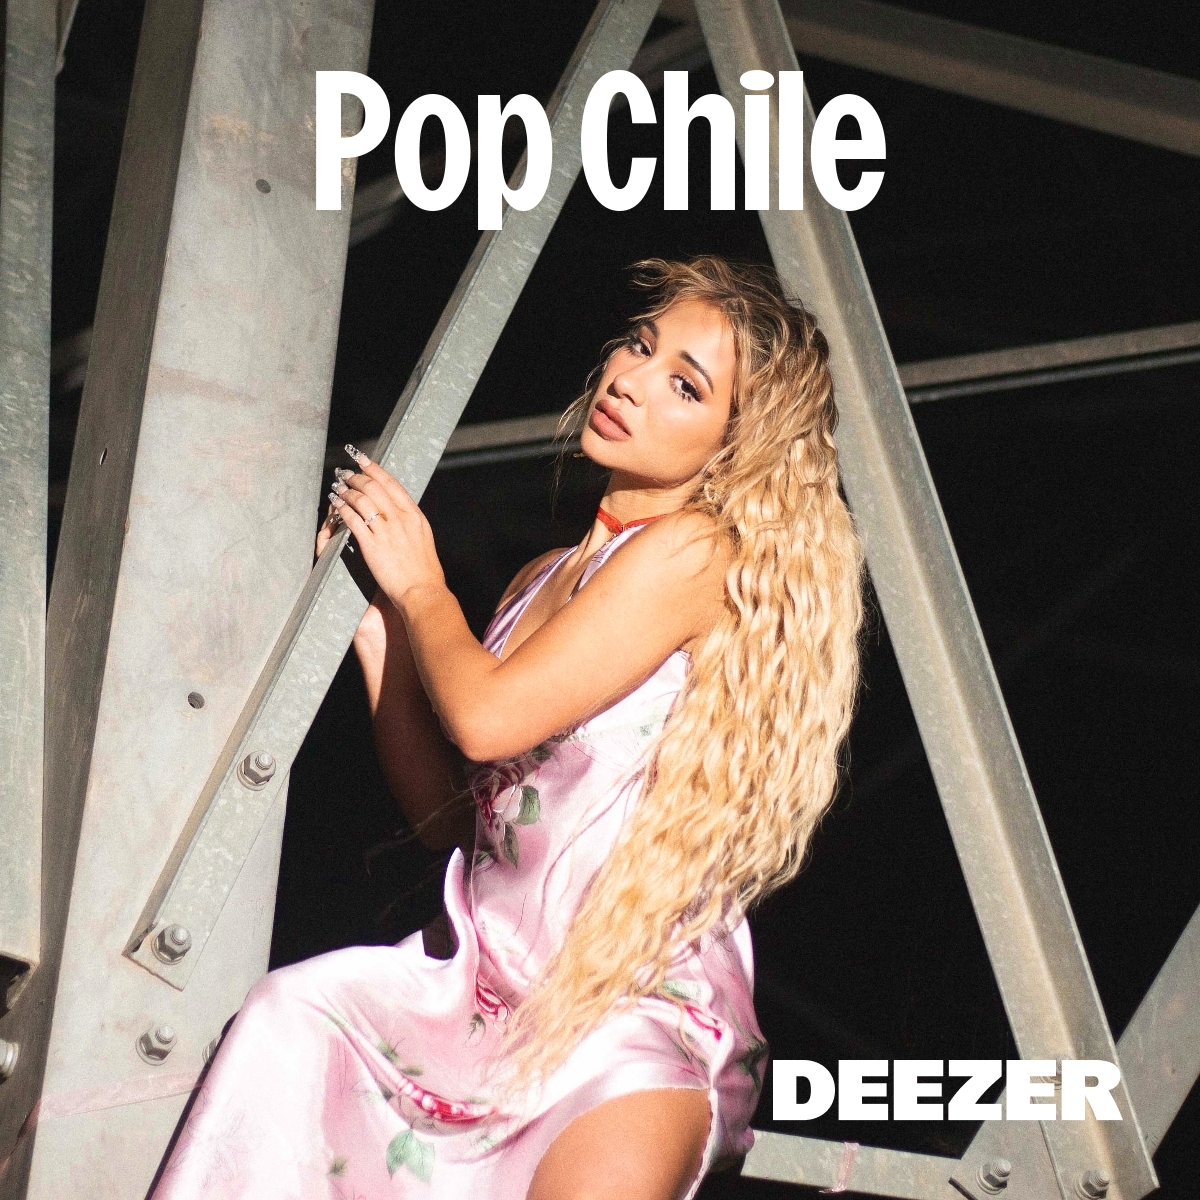 Musicaliza este sábado con esta playlist 🎶 Disfruta Pop Chile de @DeezerLatino ➡️ shorturl.at/dnqyU